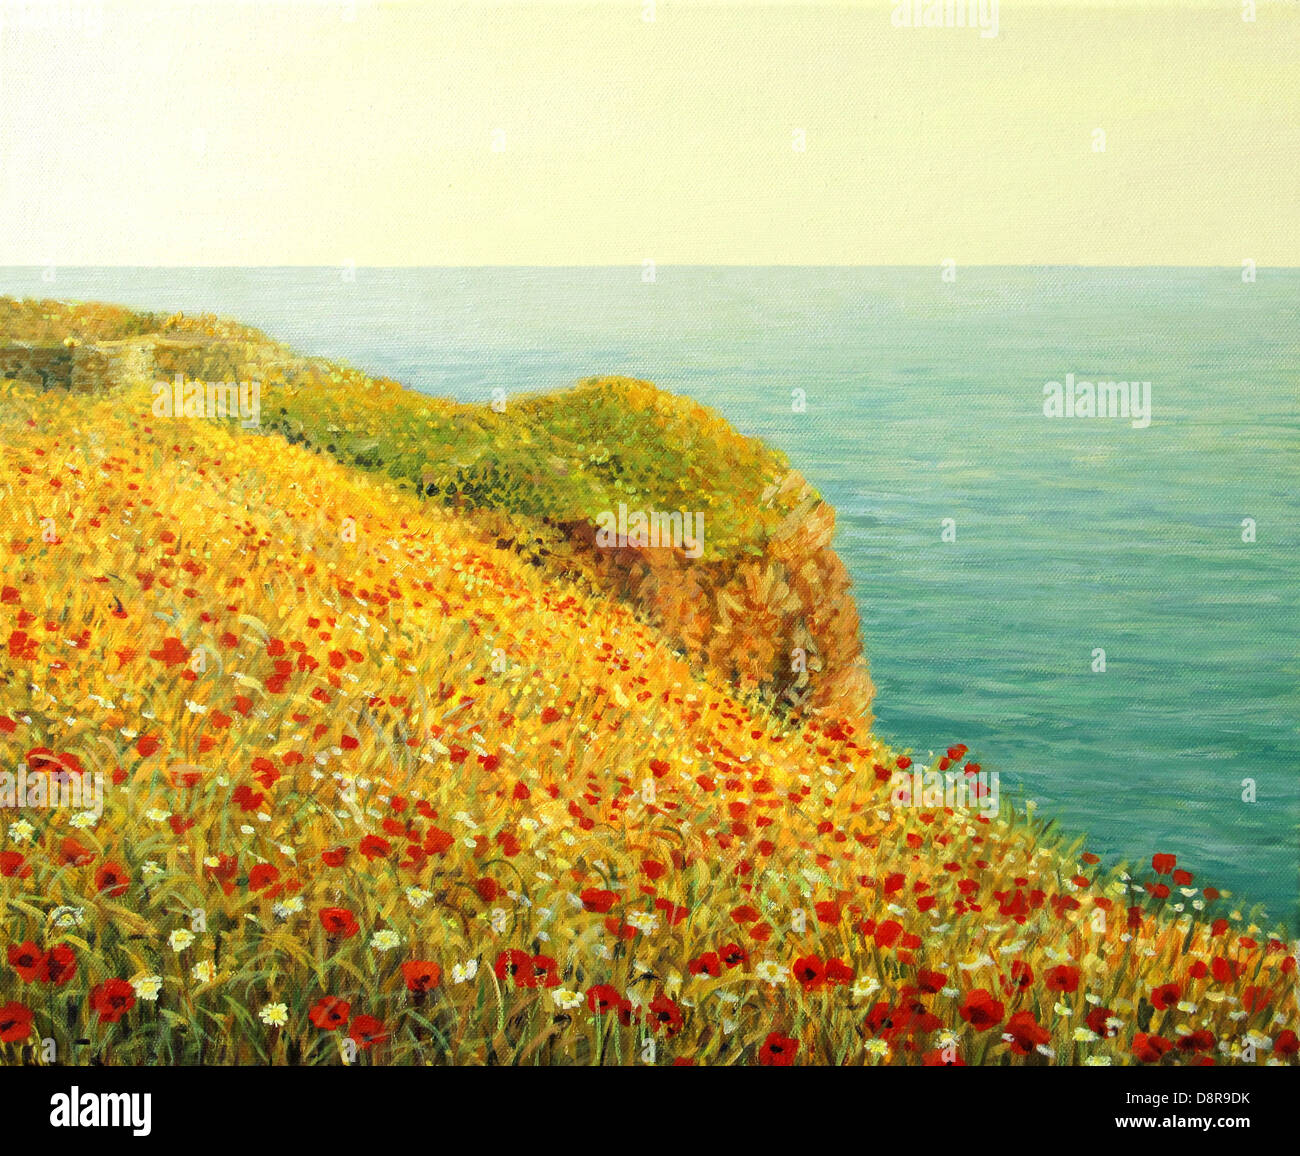 Une peinture à l'huile sur toile d'un beau paysage marin avec des coquelicots rouge vif à la côte de la mer Noire dans la chaude lumière du coucher de soleil. Banque D'Images